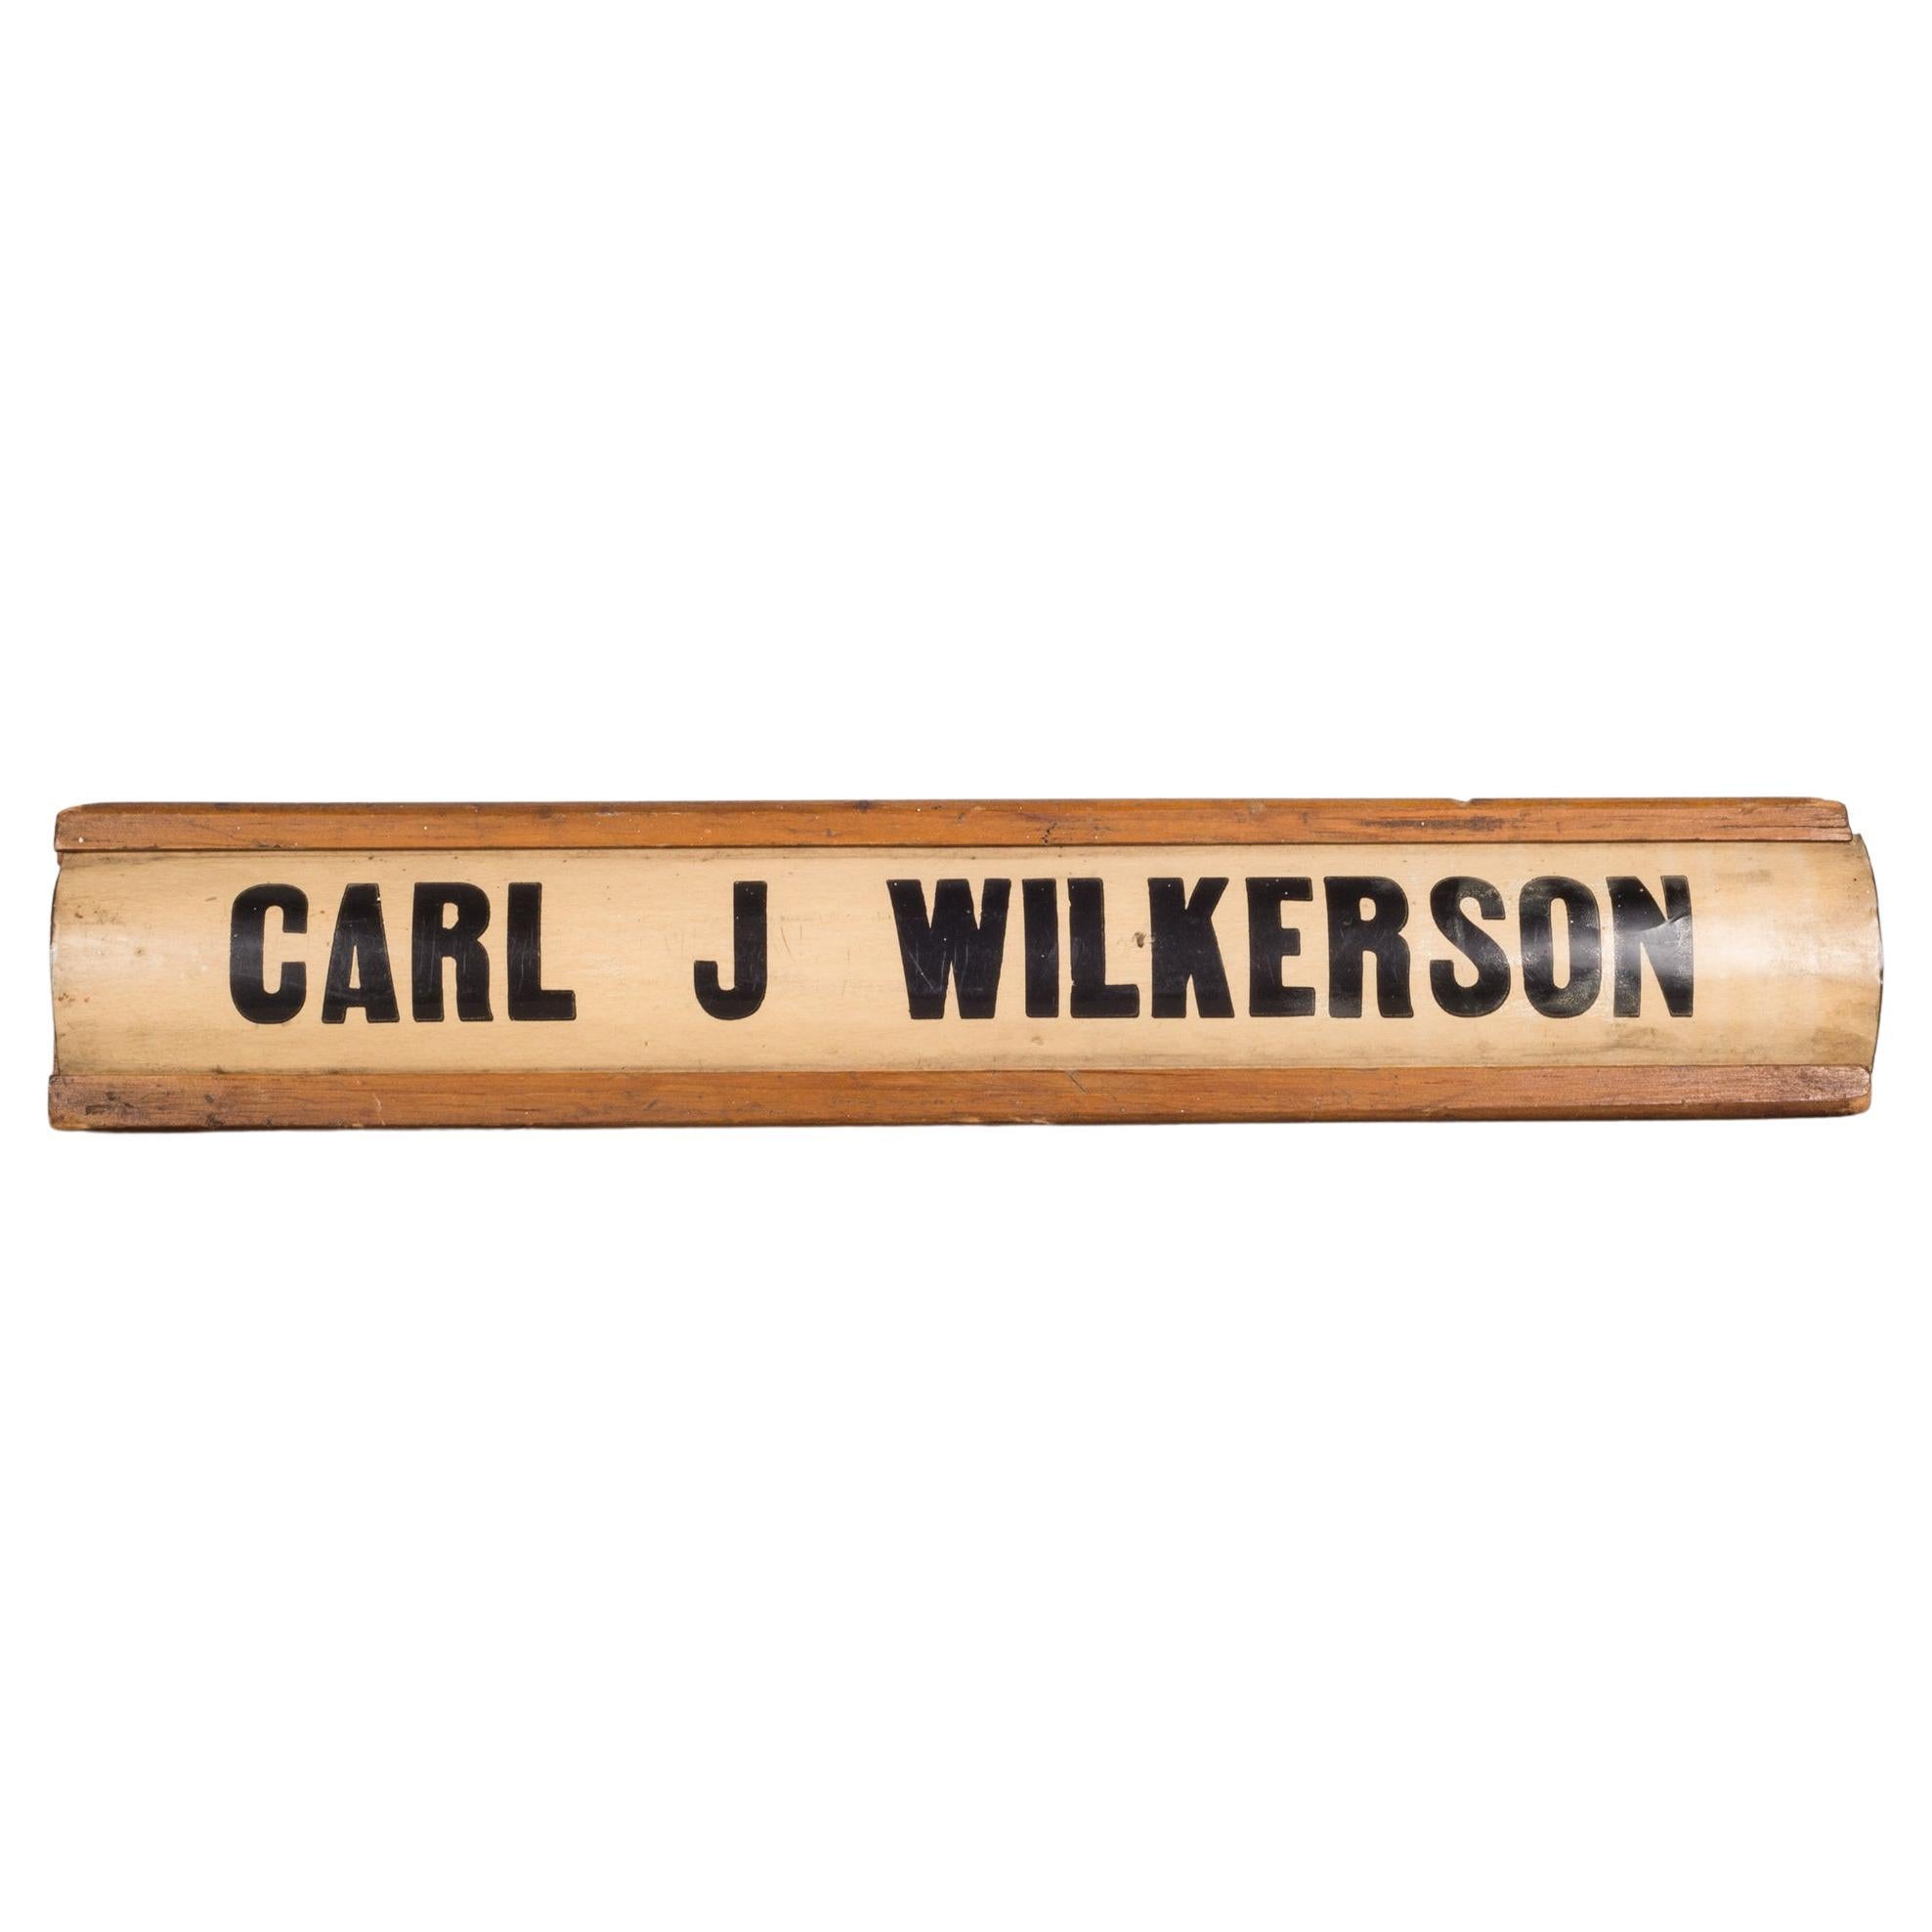 Über

Ein originales hölzernes Schreibtischschild für Carl J. Wilkerson aus Fort Knox, Kentucky. Auf der Rückseite stehen die Jahre seiner Beschäftigung sowie die Unterschriften aller seiner Mitarbeiter bei seiner Pensionierung. Ein weiteres